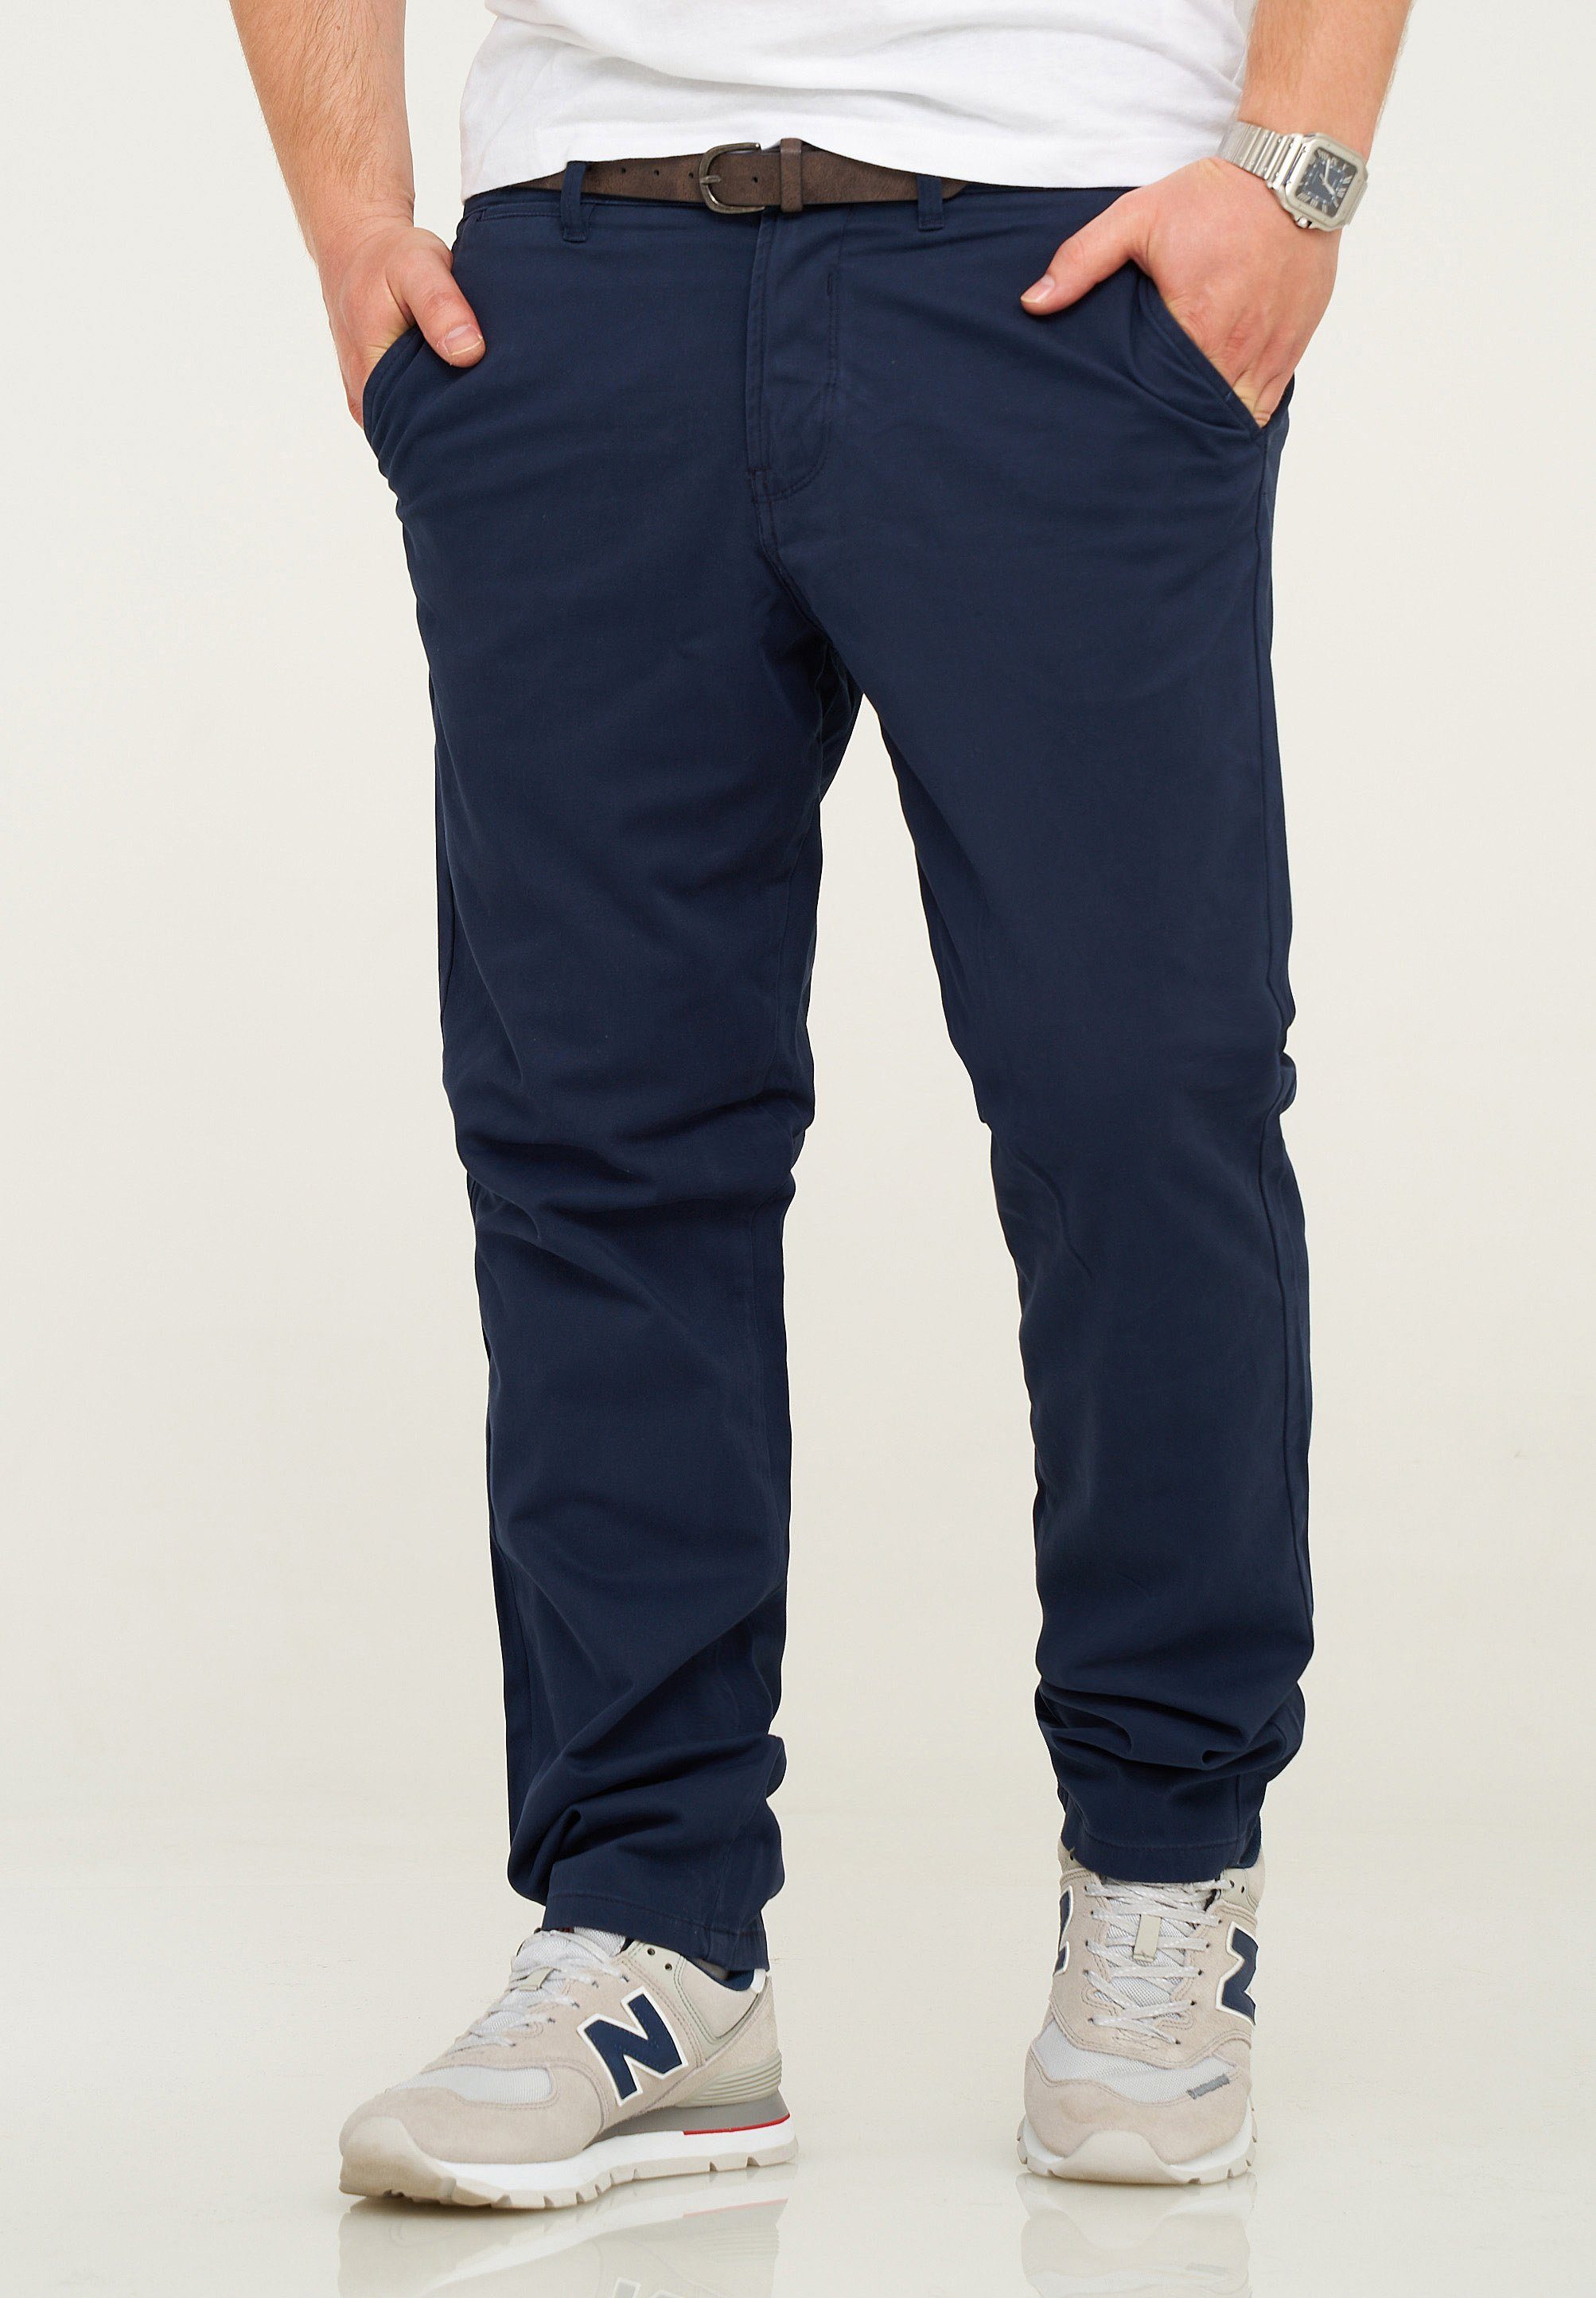 Jack & Jones Chinohose JJCS mit Gürtel Stretch Jeans-Hose Casual Freizeithose Navy Blazer